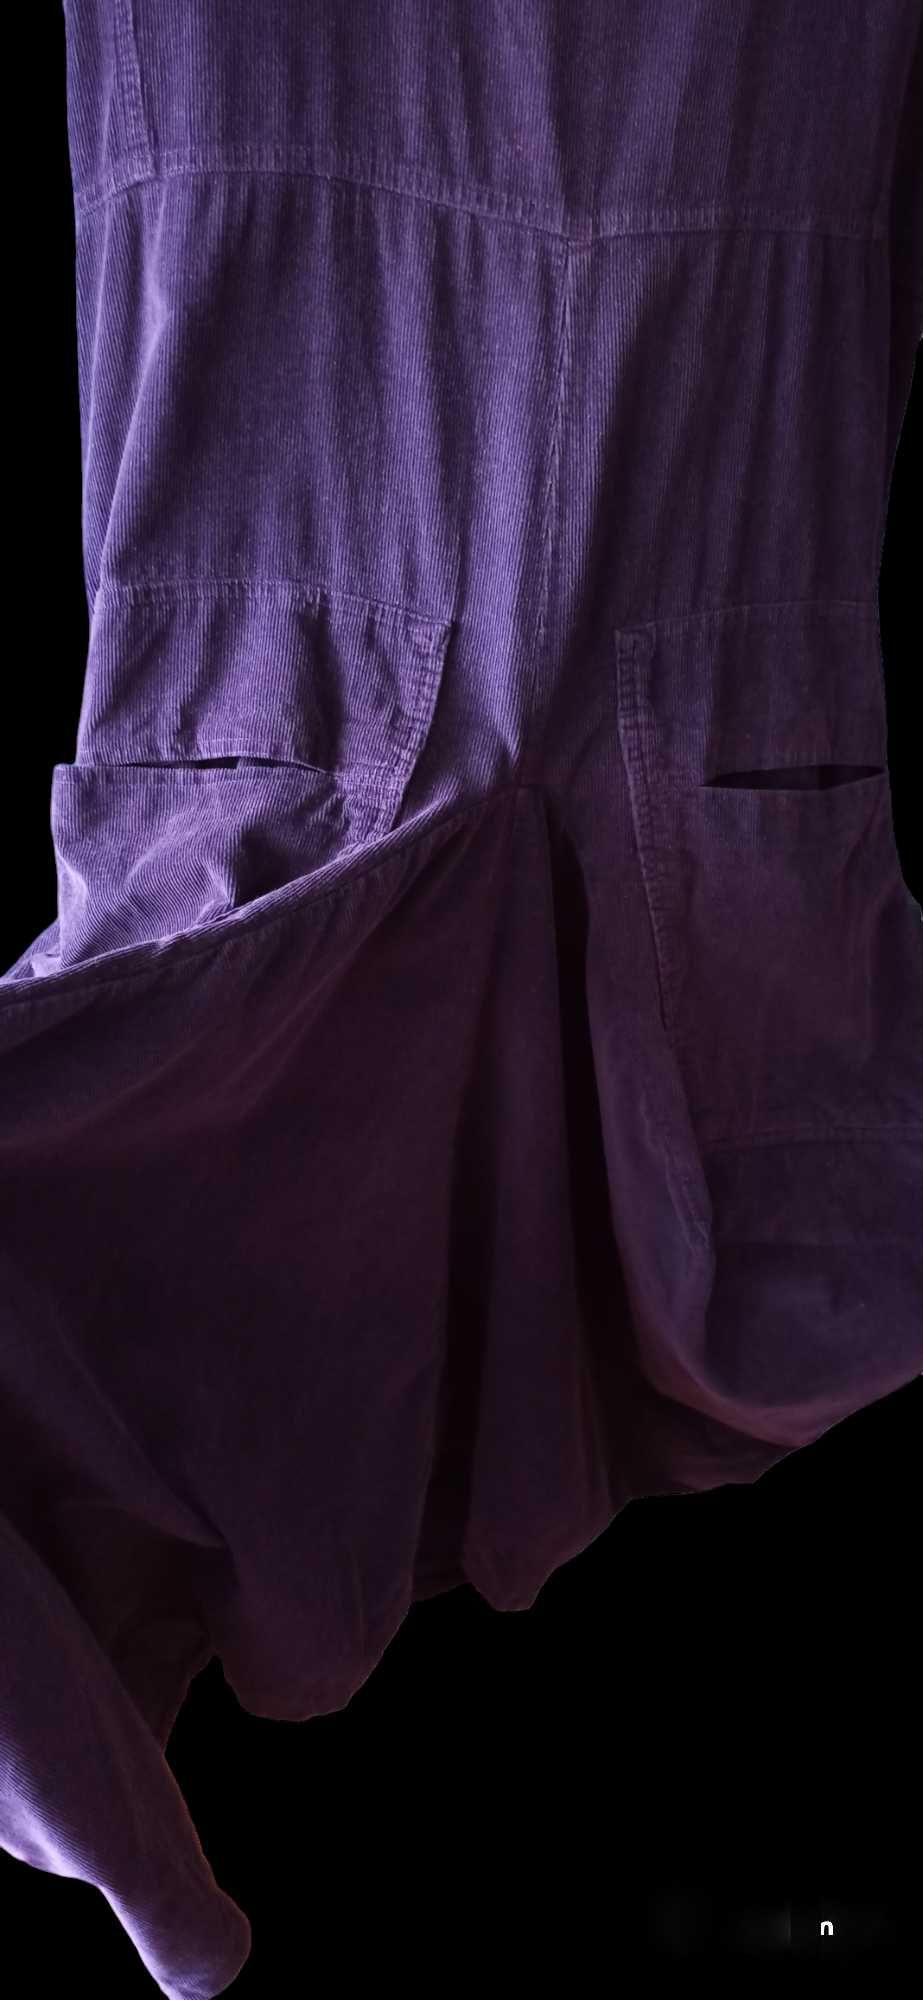 sukienka długa sztruks kieszenie asymetryczna projekt Gudrun Sjoden